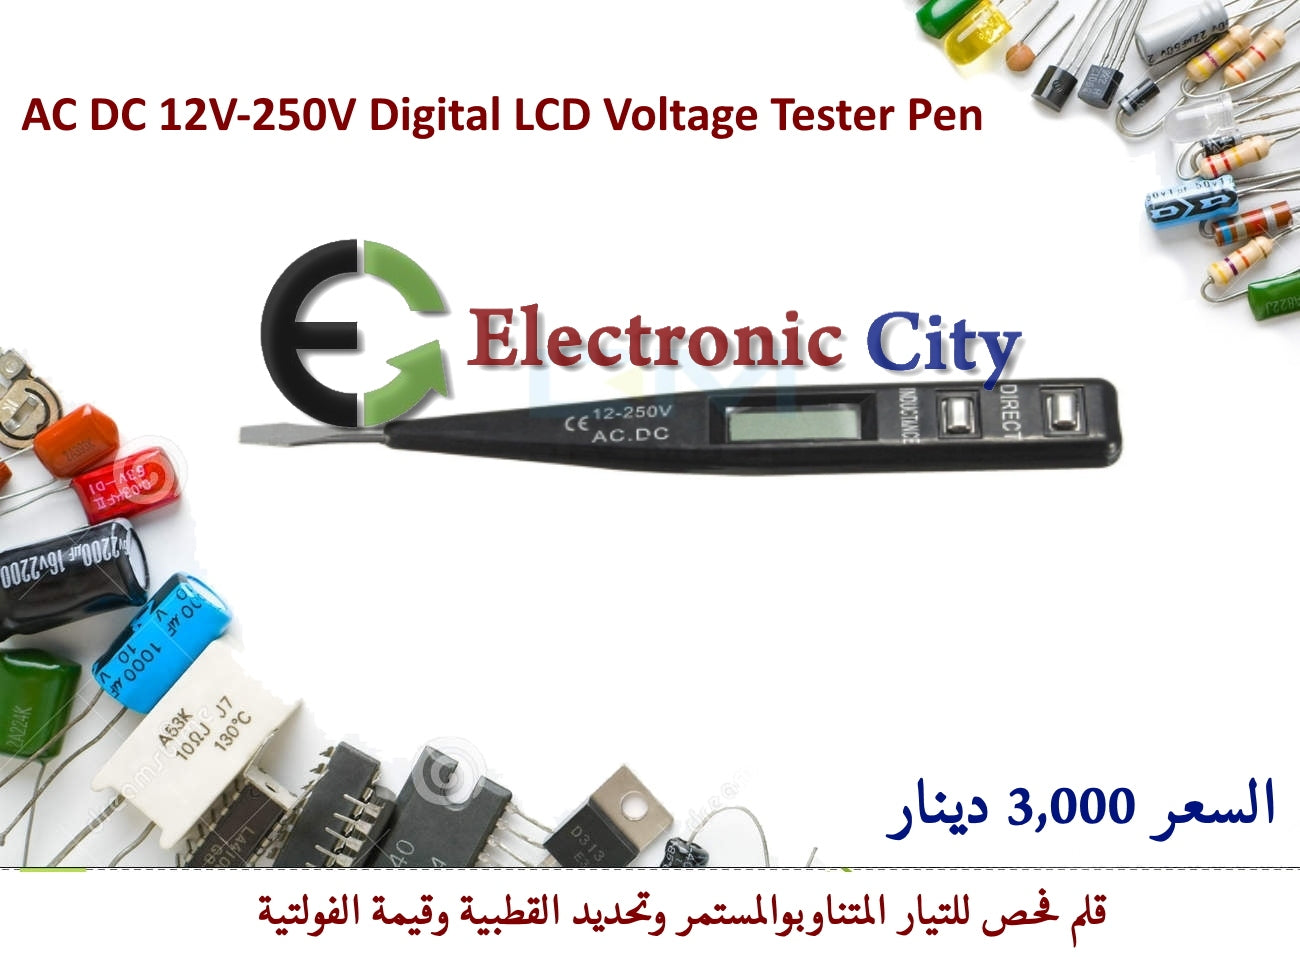 AC DC 12V-250V Digital LCD Voltage Tester Pen #R5 050674